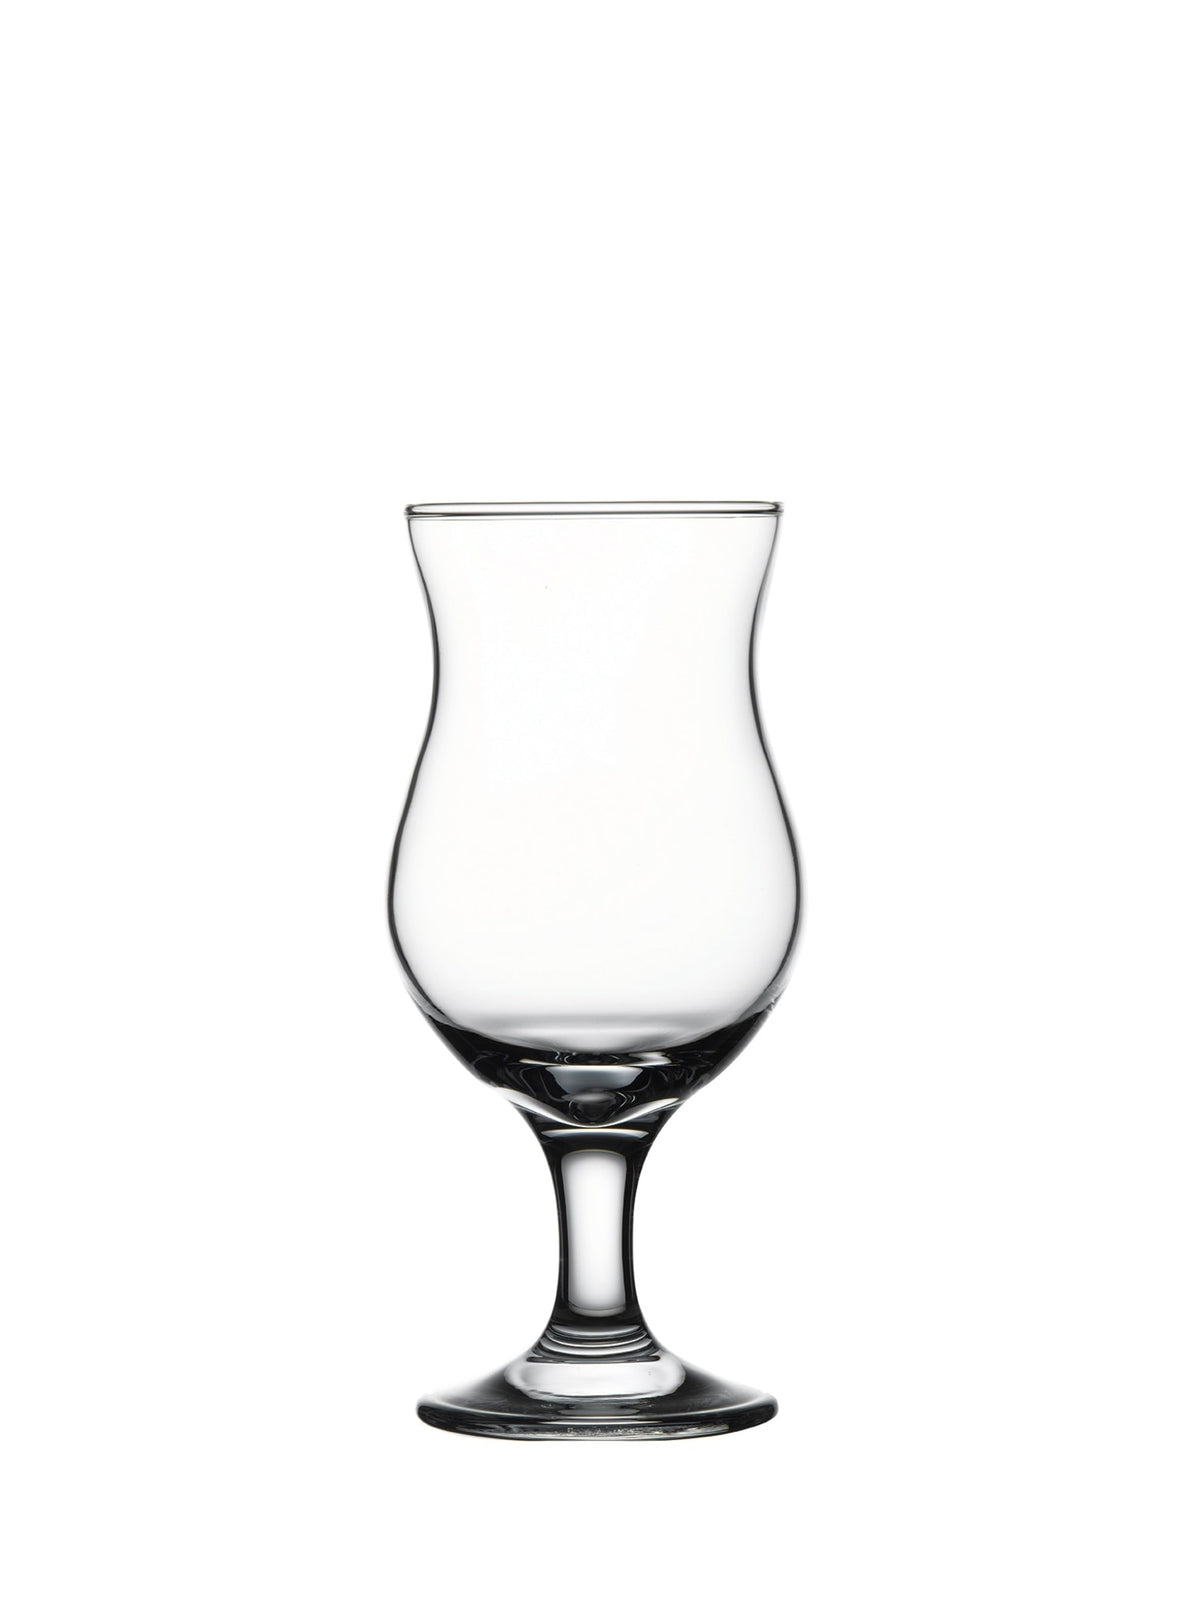 Et smukt Capri Cocktailglas med en kapacitet på 38,0 cl - perfekt til enhver cocktailentusias